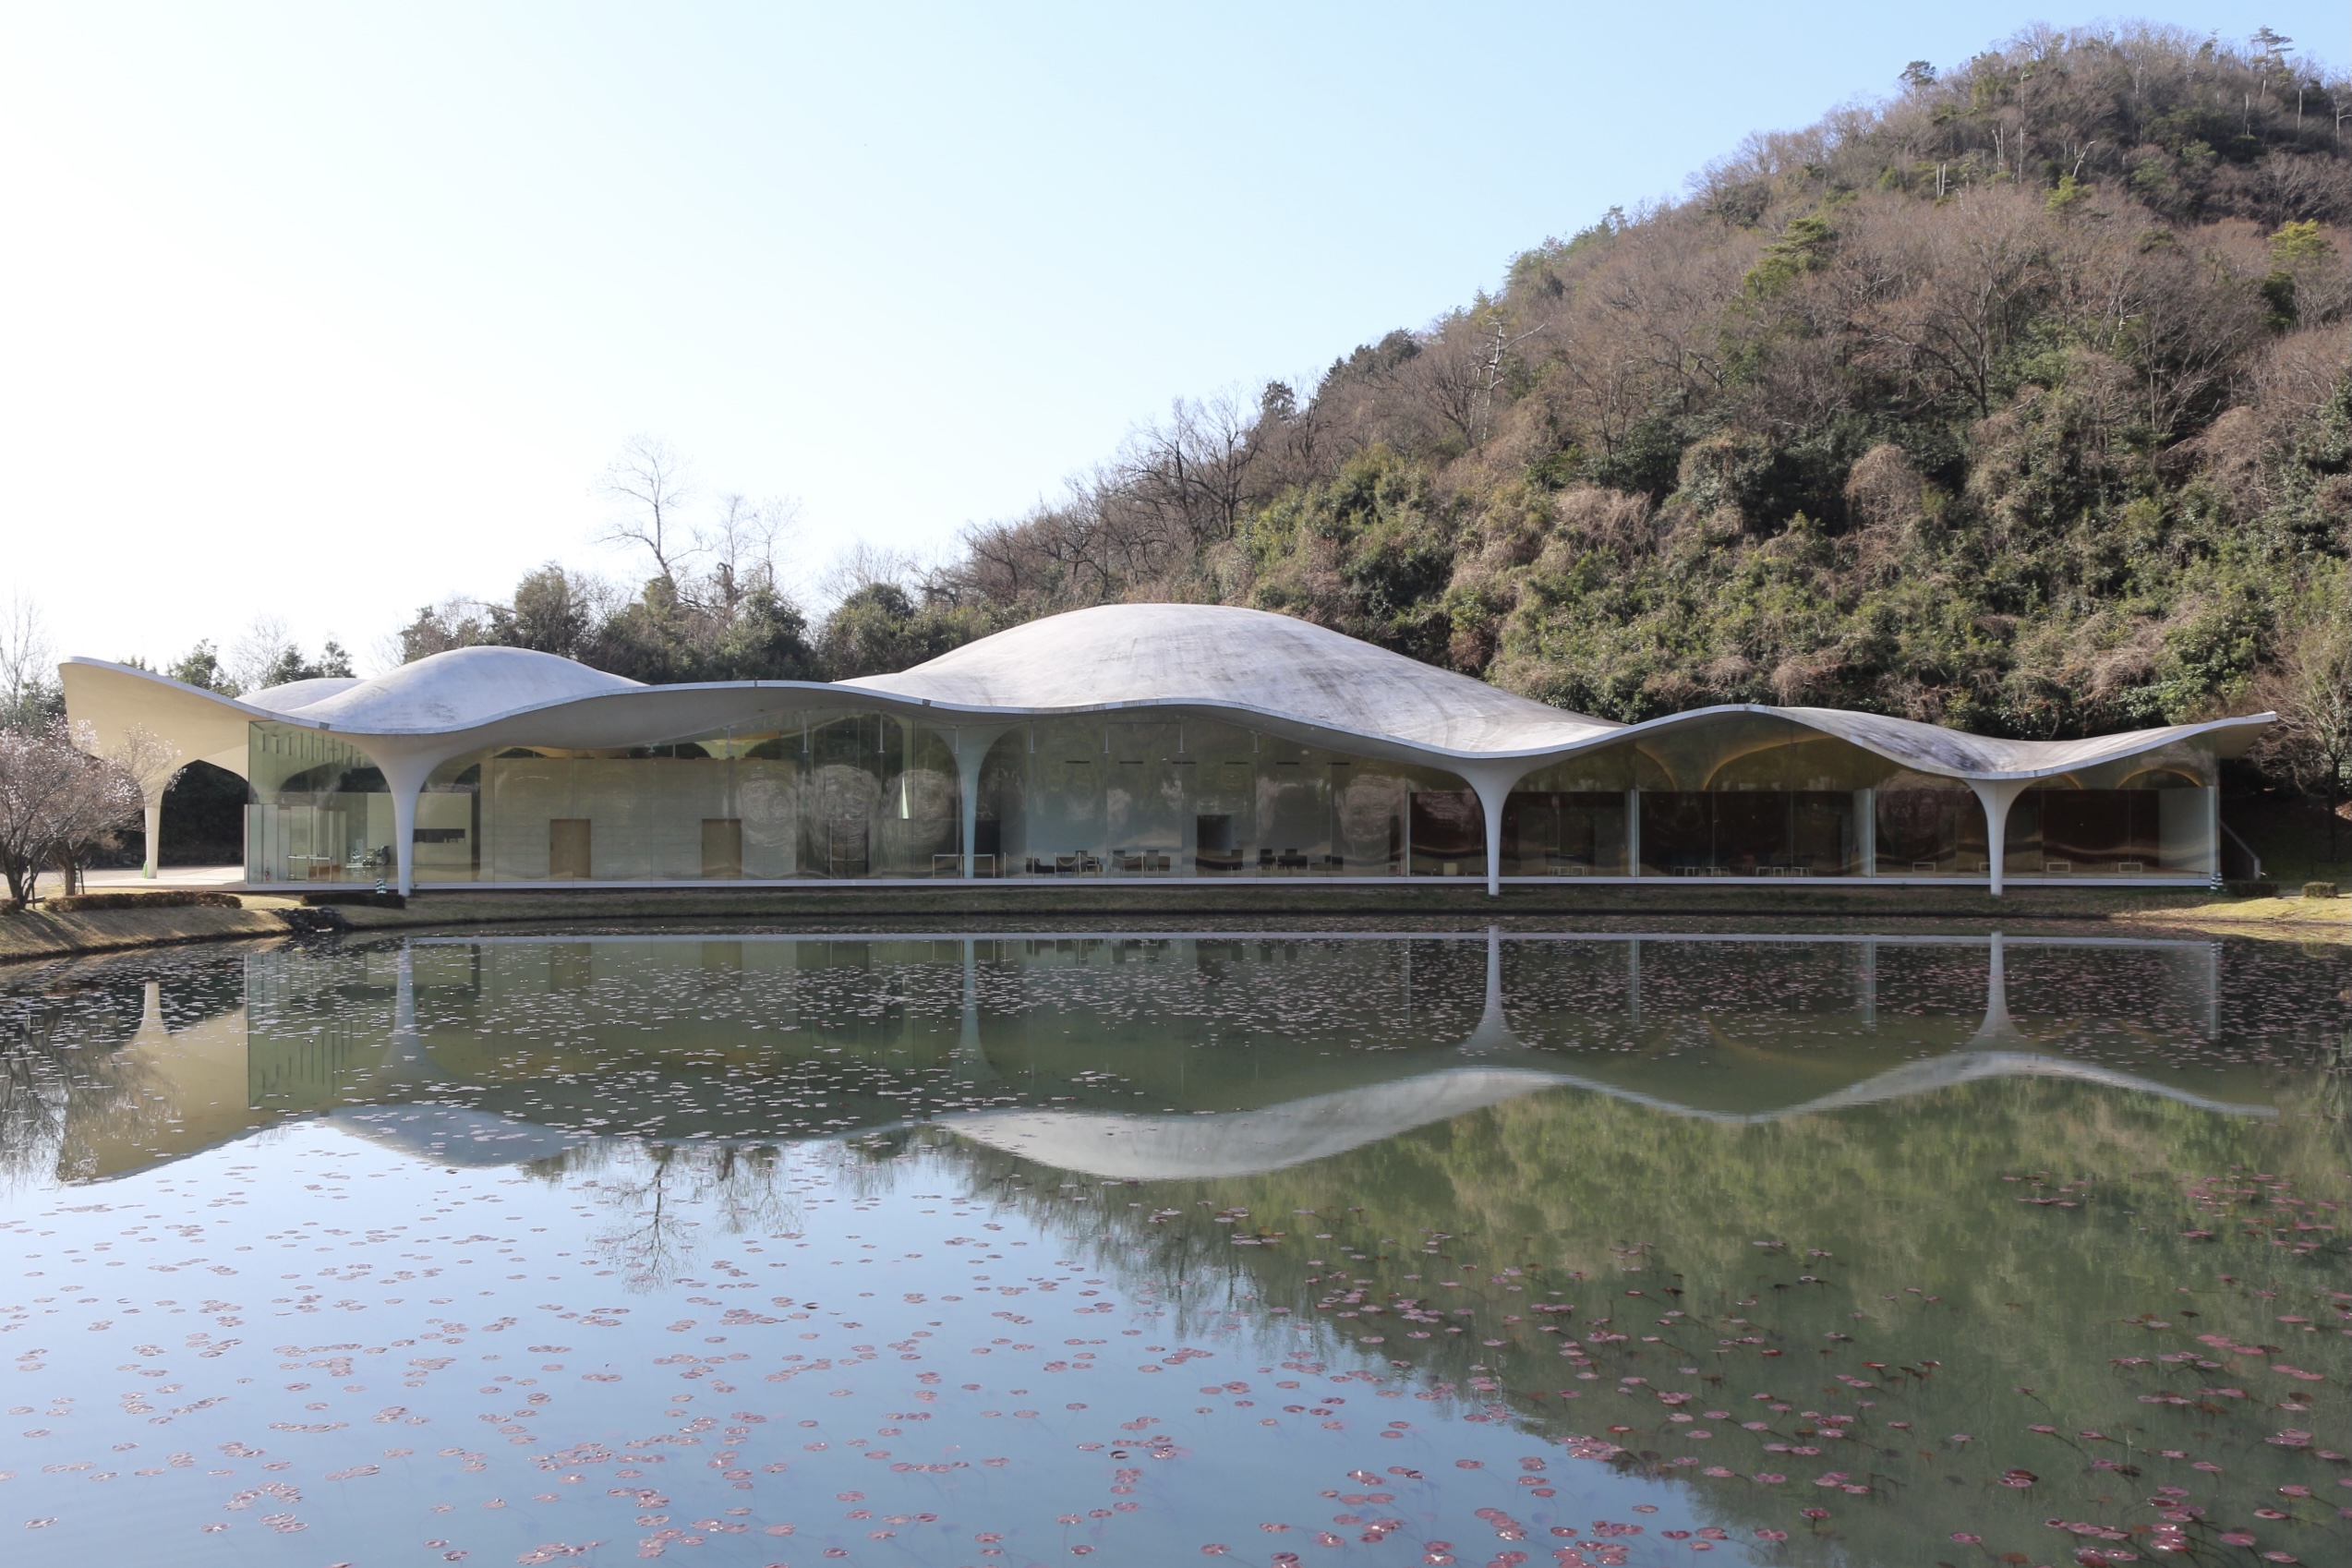 伊東豊雄氏設計、美しい曲面屋根の市営斎場【瞑想の森】をご紹介します。